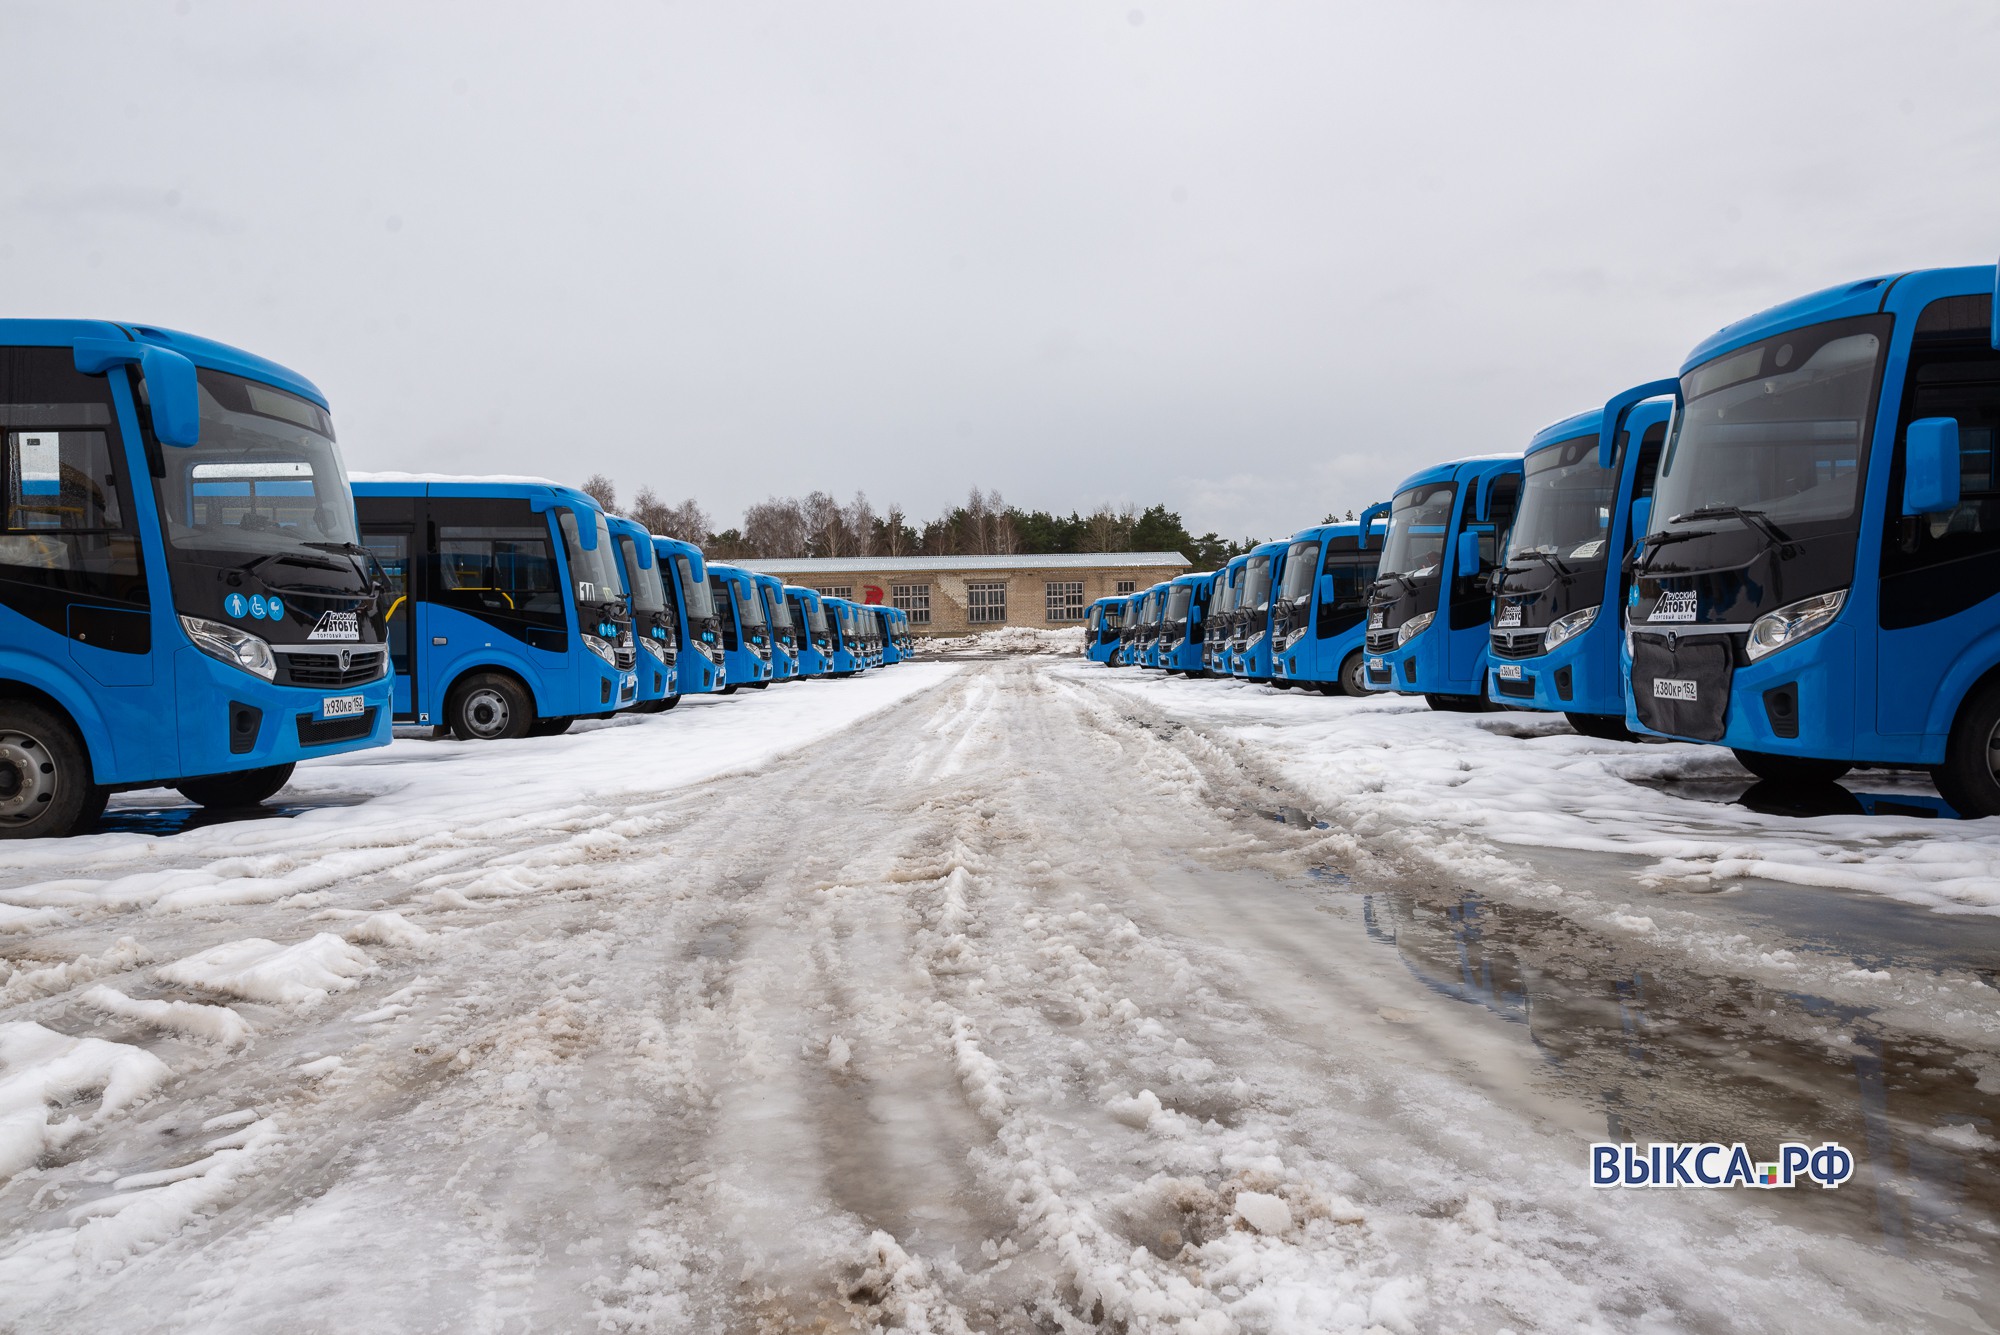 Проезд в автобусах подорожает с 1 января